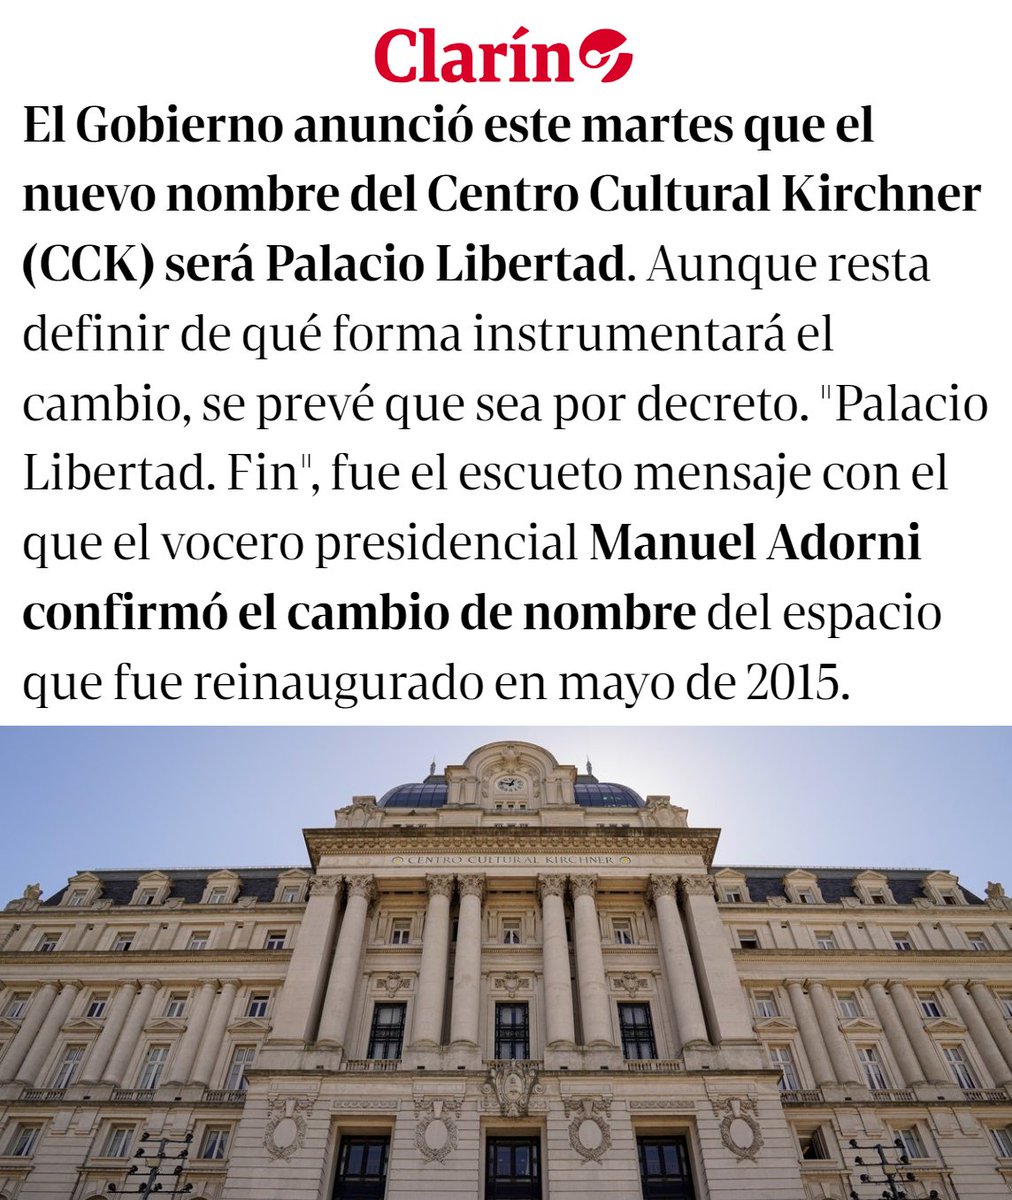 'Palacio Libertad': Porque el Centro Cultural Kirchner pasará a llamarse Palacio Libertad